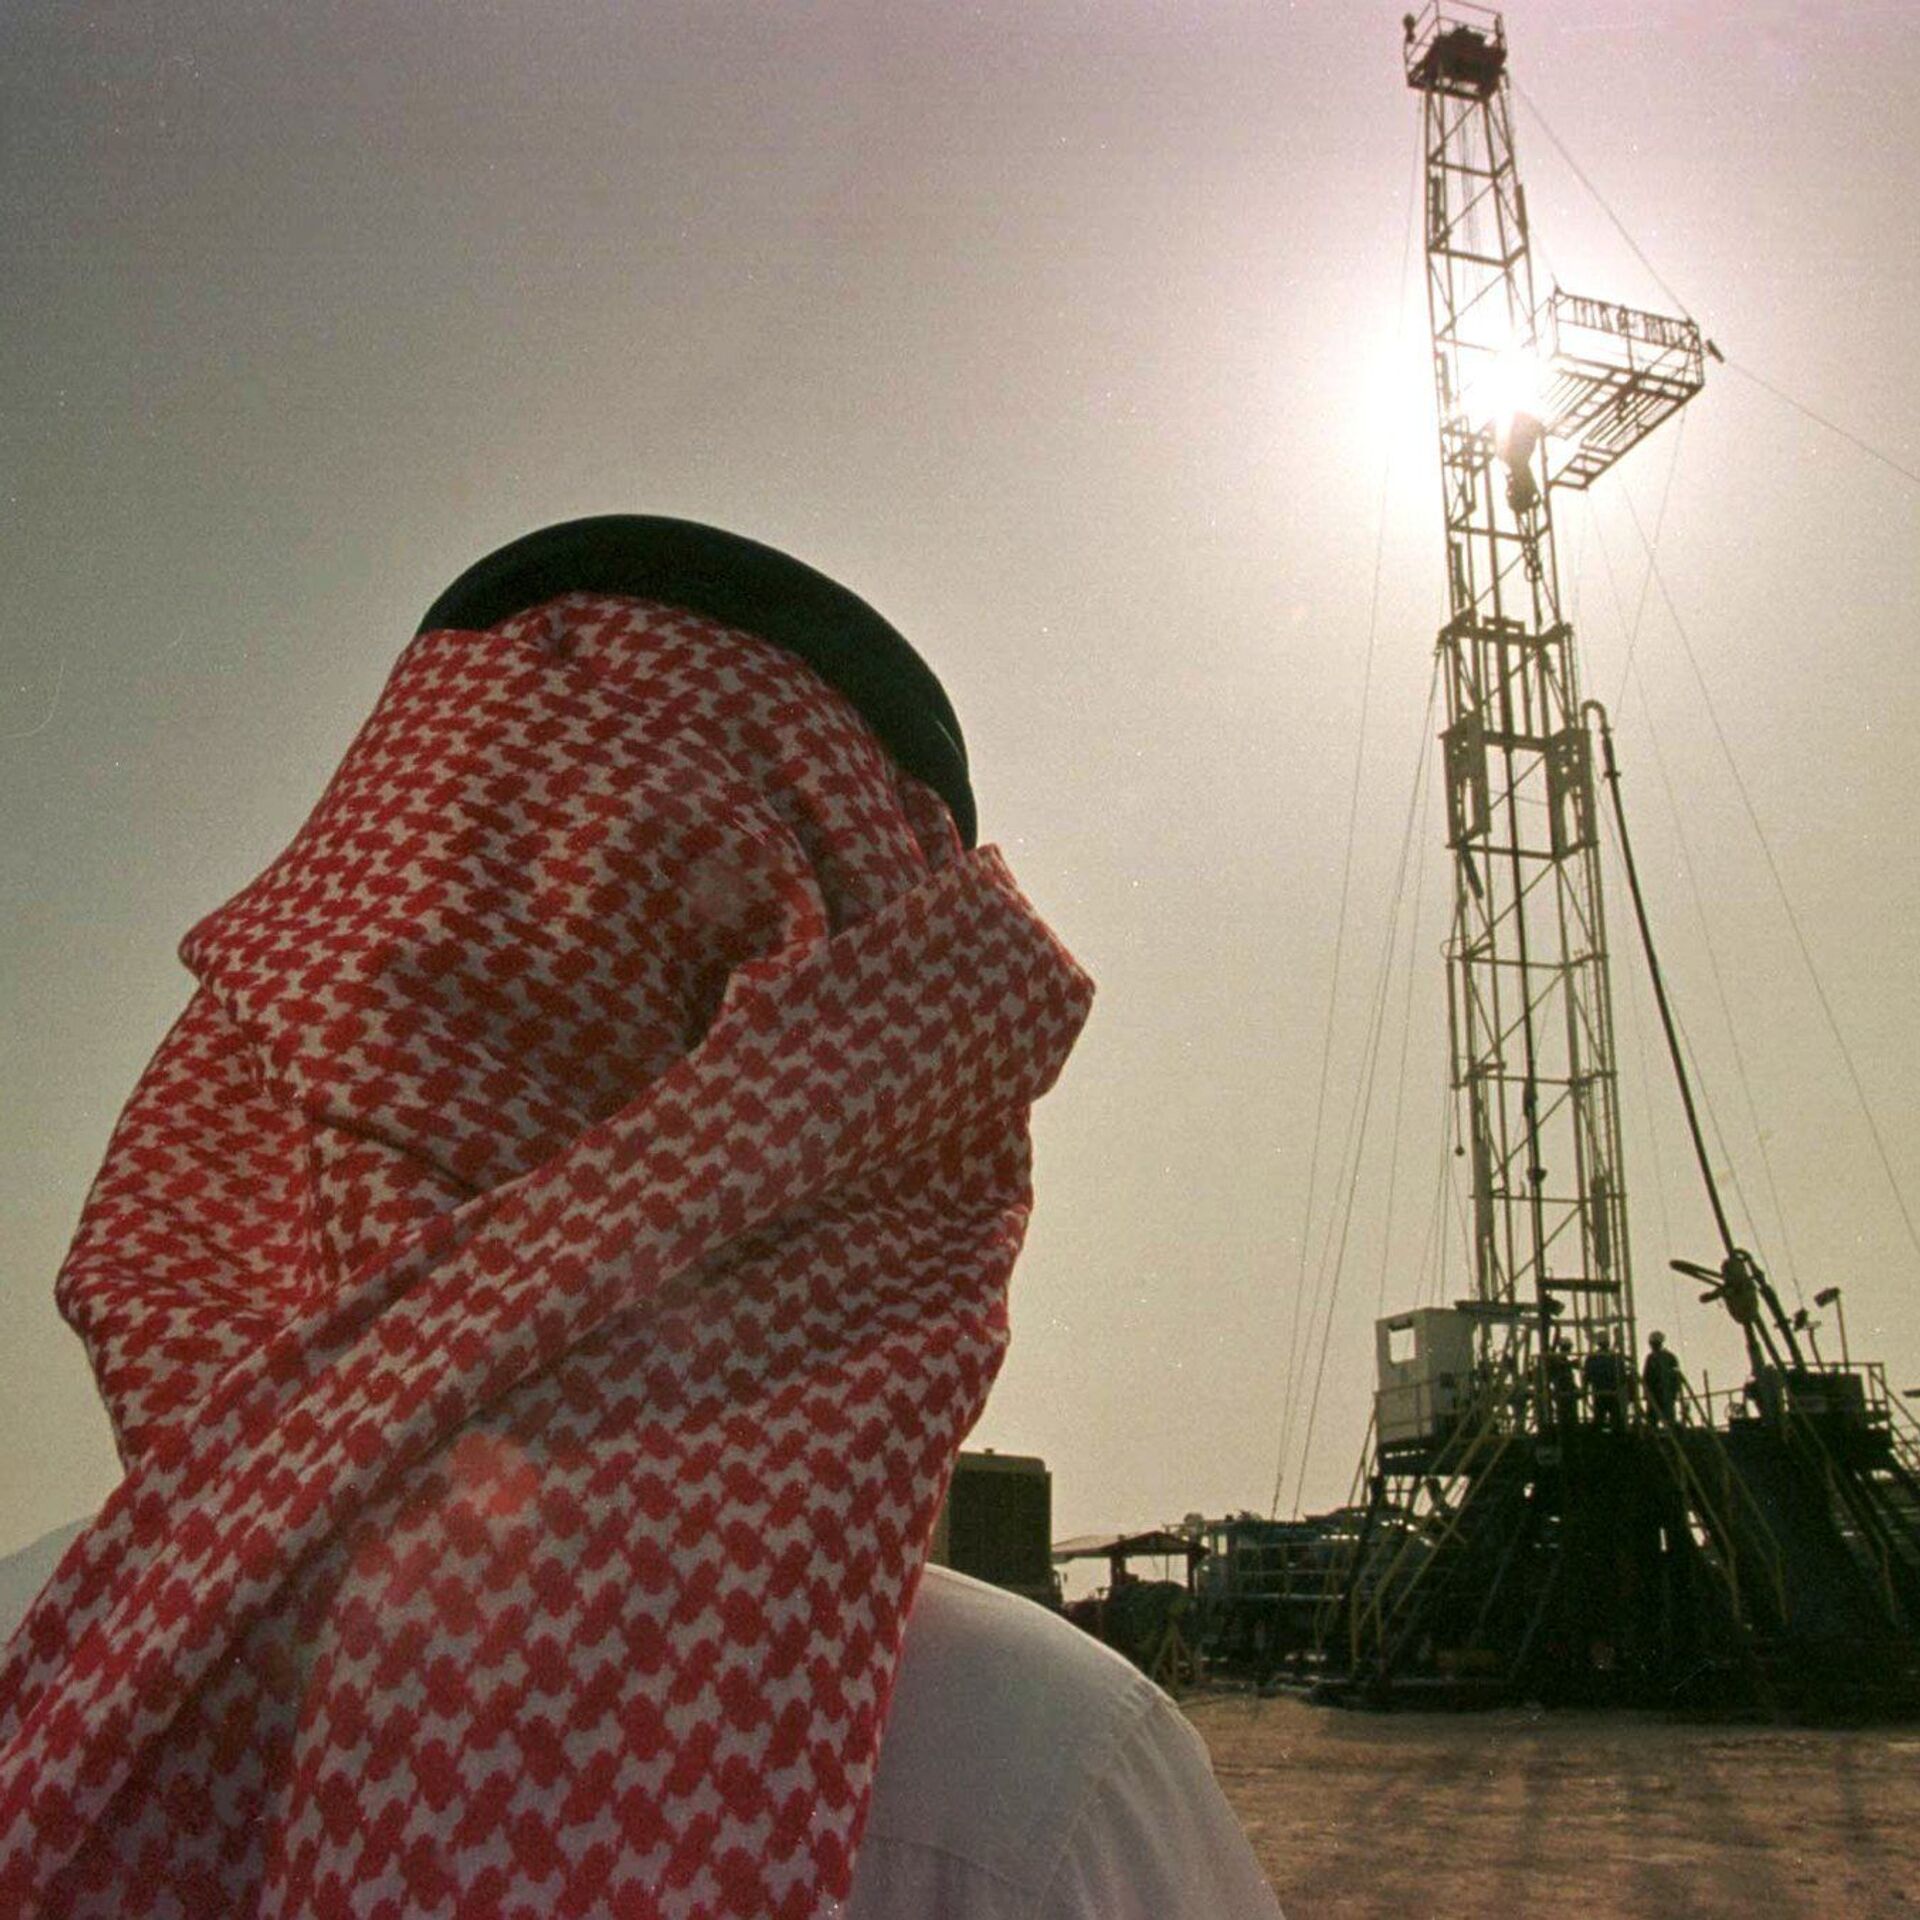 Саудовская аравия бензин. Саудовская Аравия нефтедобыча. Саудиты нефть РФ нефть. Нефтепромышленность Саудовская Аравия. Объединённые арабские эмираты добыча нефти.